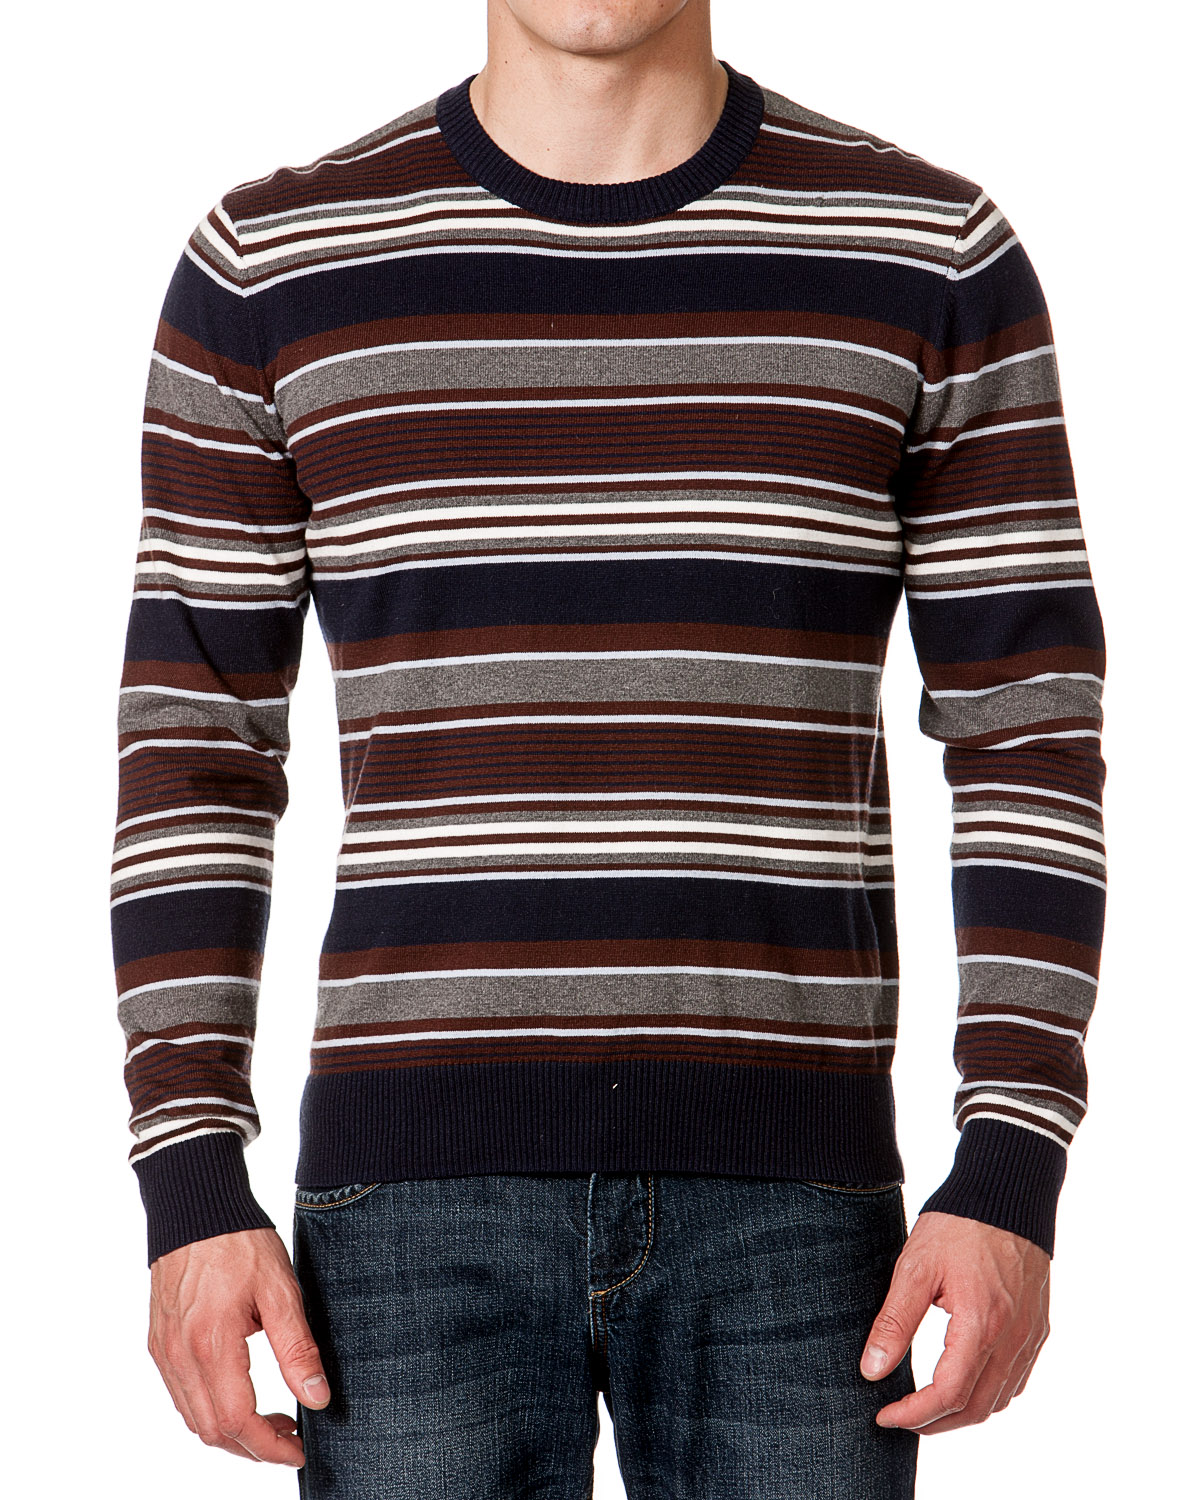 Вайлдберриз мужские свитера. Полосатый свитер мужской. Пуловер полосатый мужской. Мужской свитер в полоску. Водолазка в полоску.